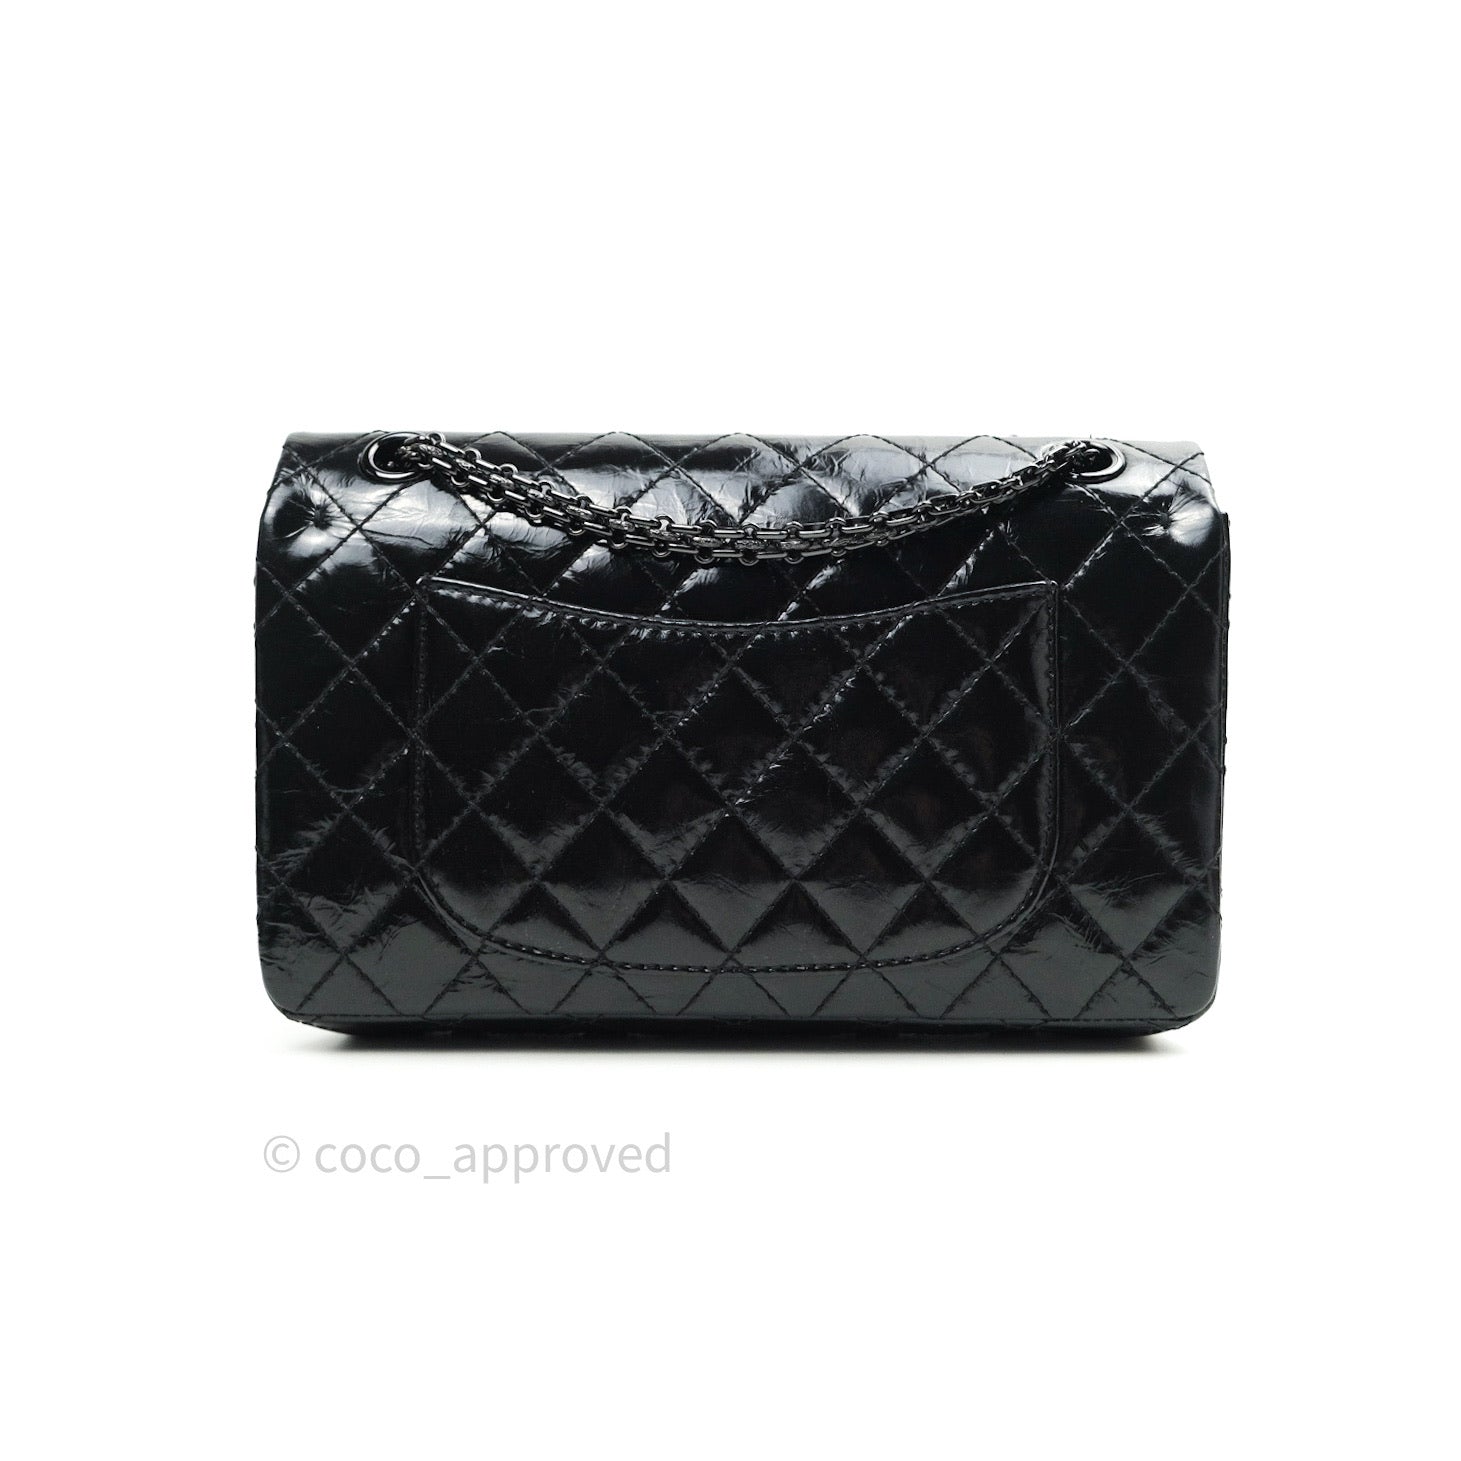 Chanel 2.55 Reissue Glazed Calfskin So Black 225 Black Hardware